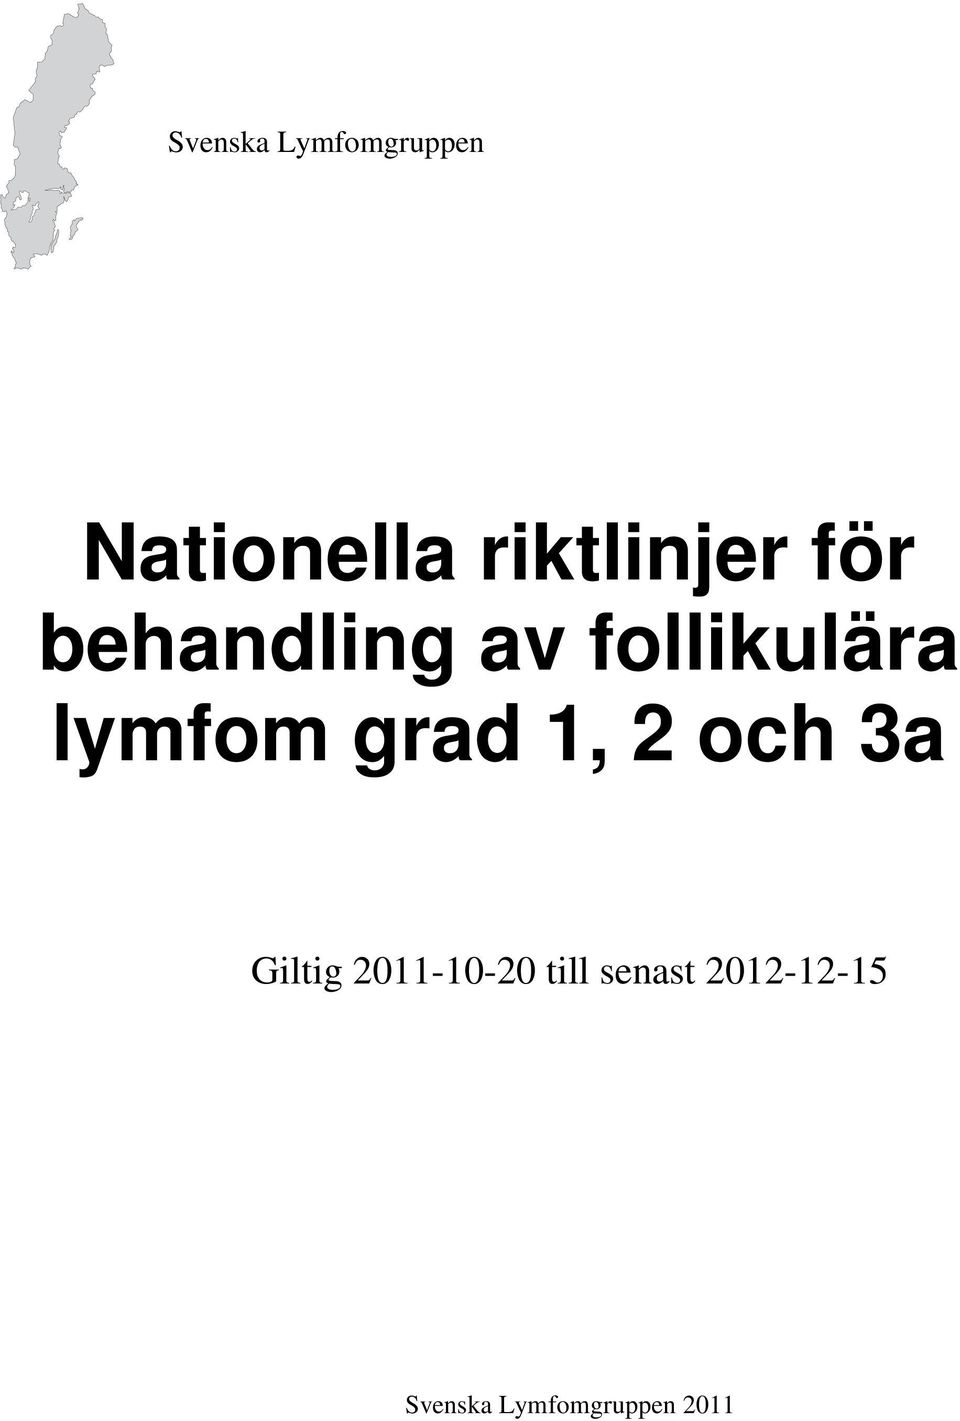 lymfom grad 1, 2 och 3a Giltig 2011-10-20